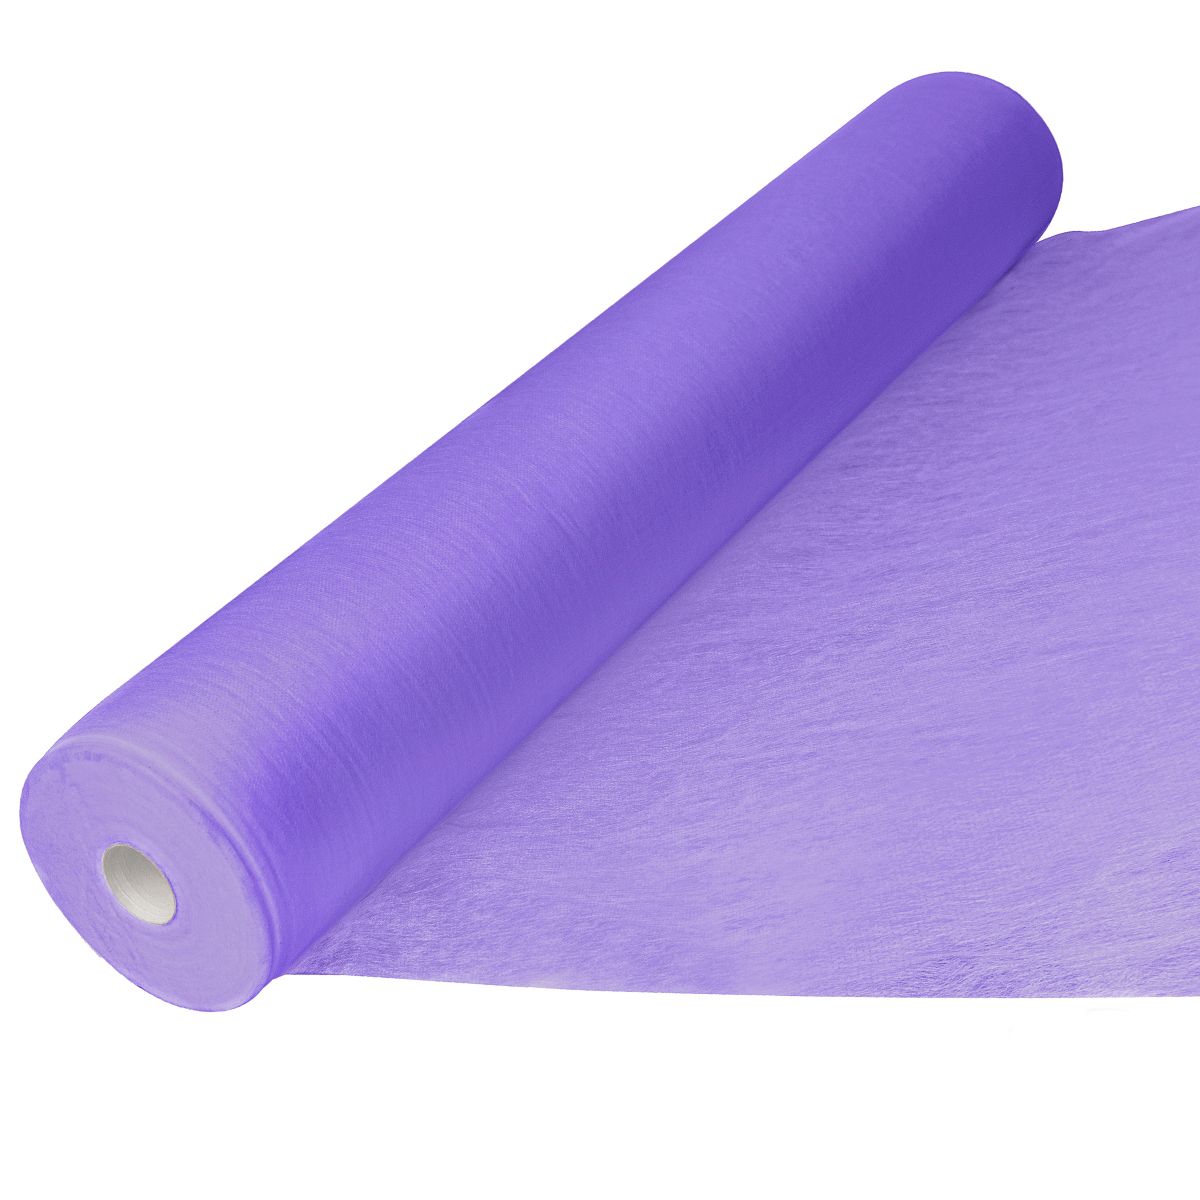 Простыни 70*200 ДМК В рулоне фиолетовые стандарт (100шт)